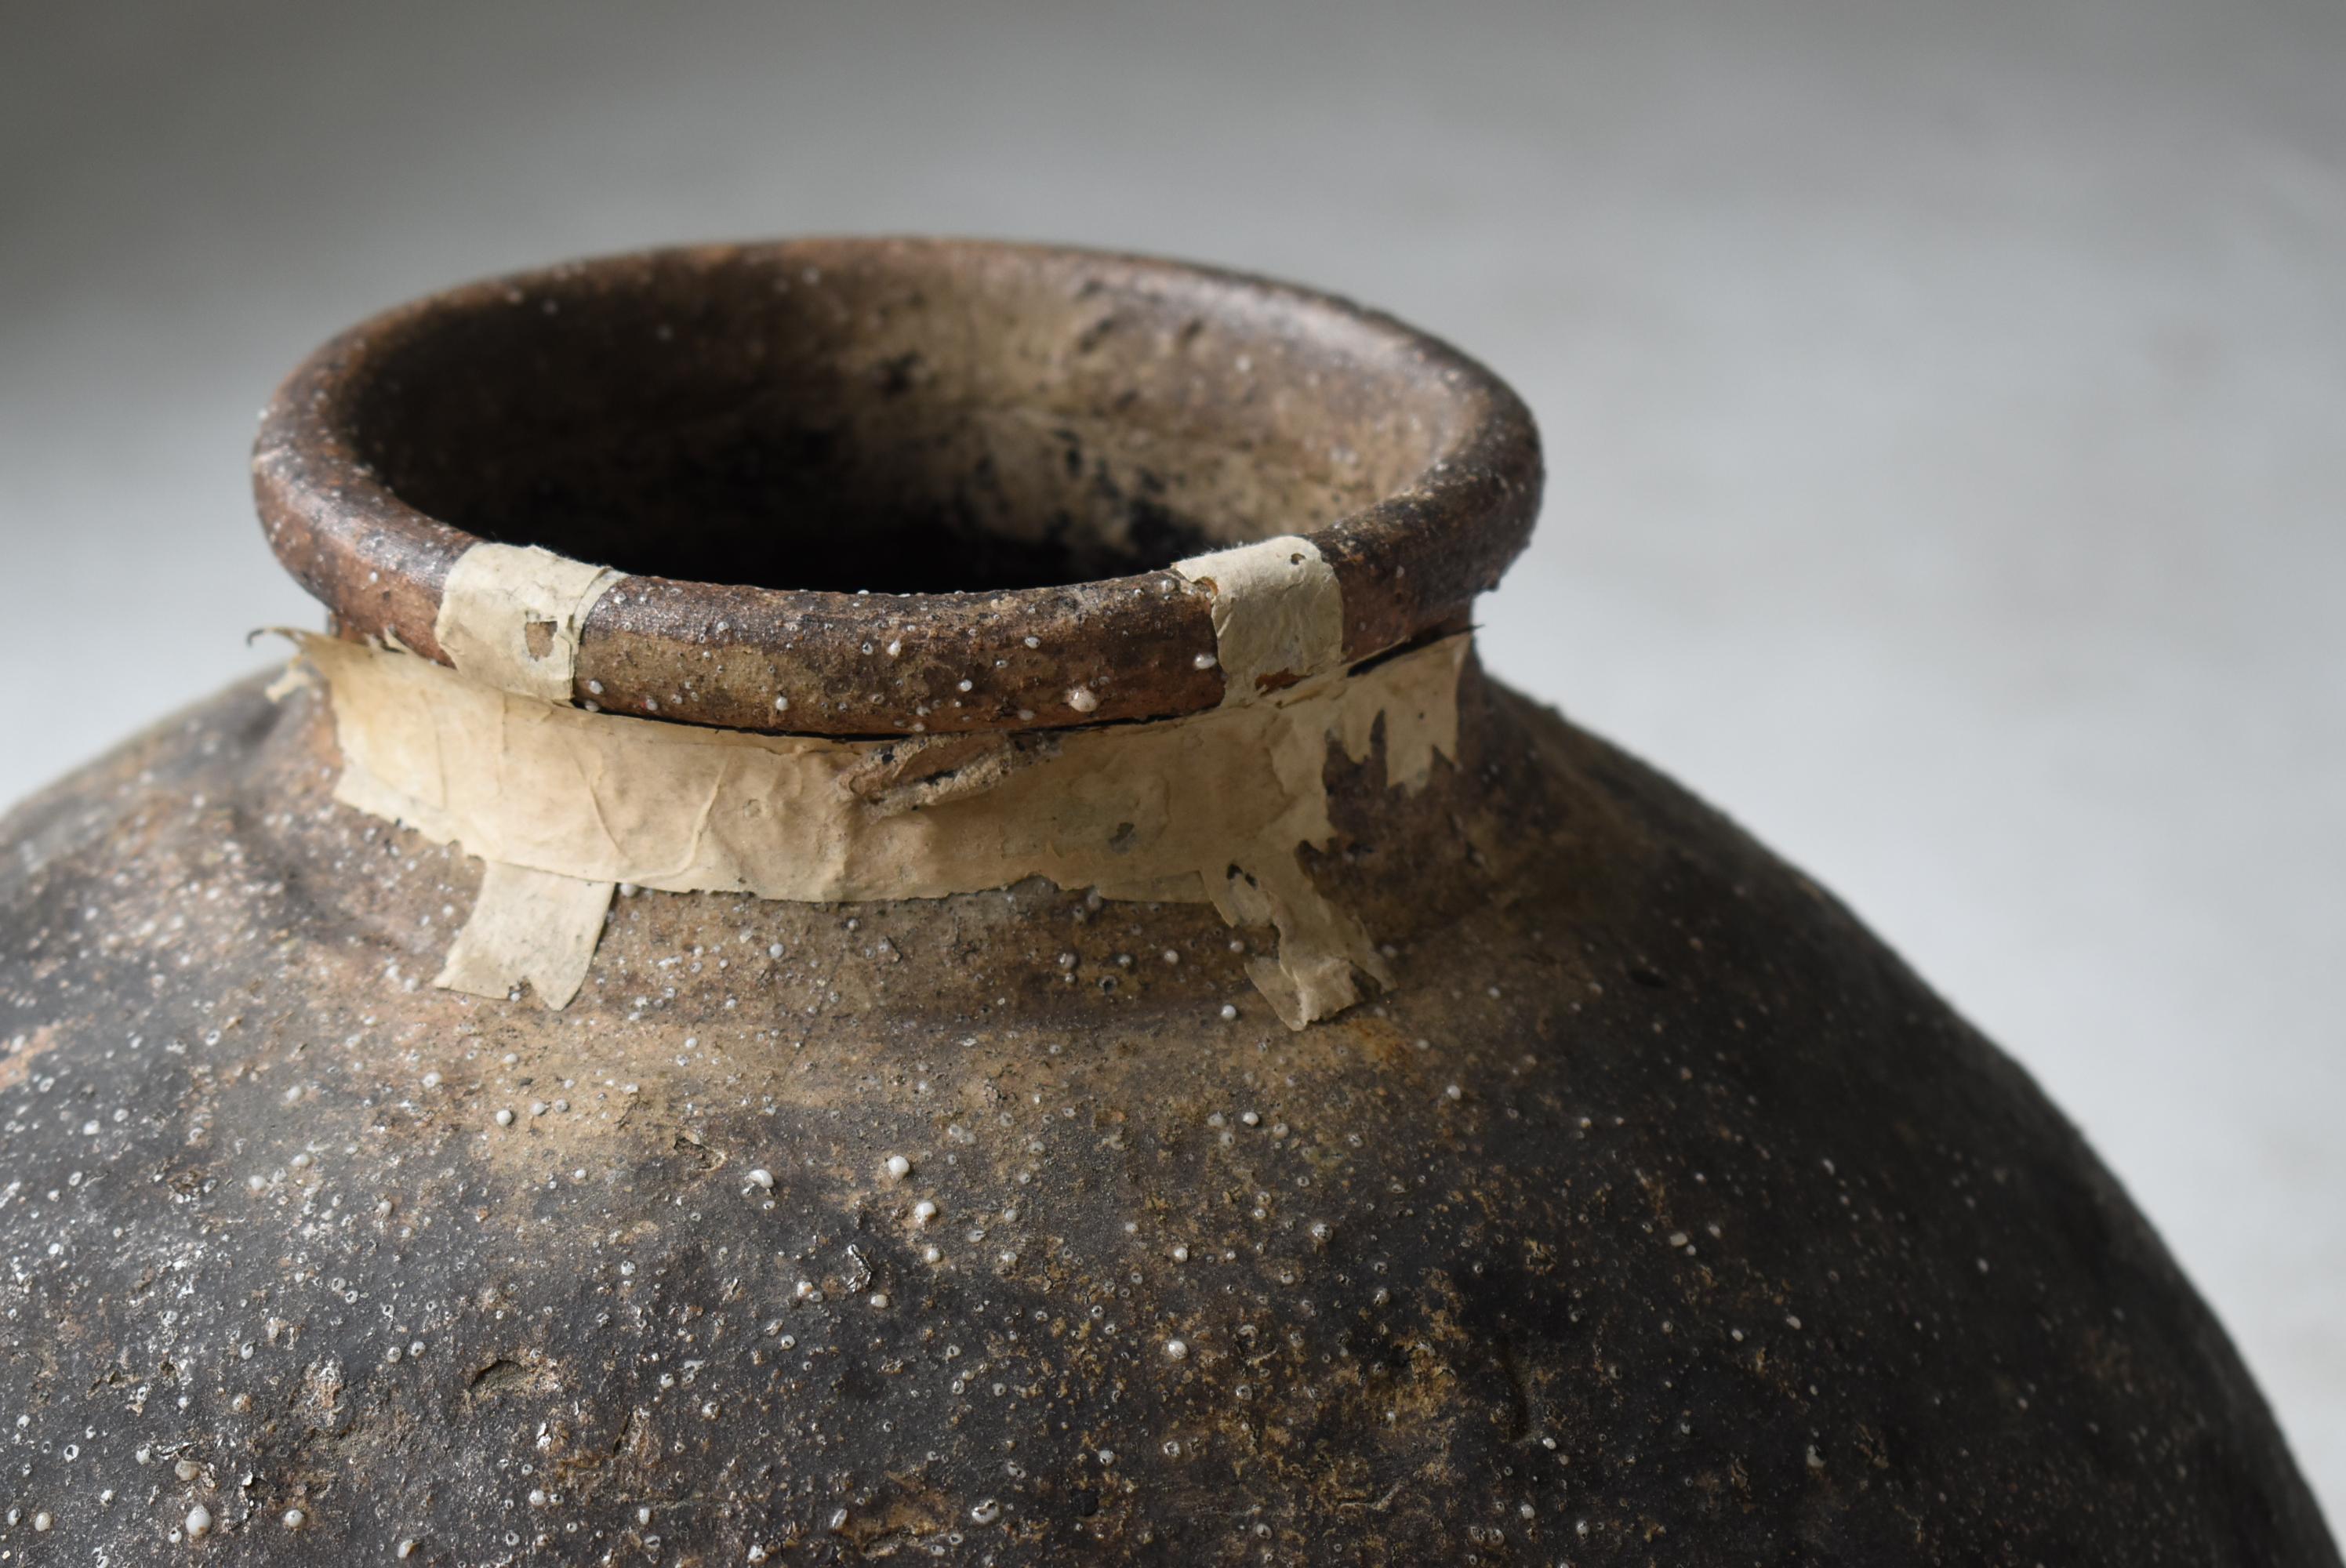 Edo Japanese Antique Pottery 1800s-1900s Tsubo/ Flower Vase Jar Ceramic Wabisabi